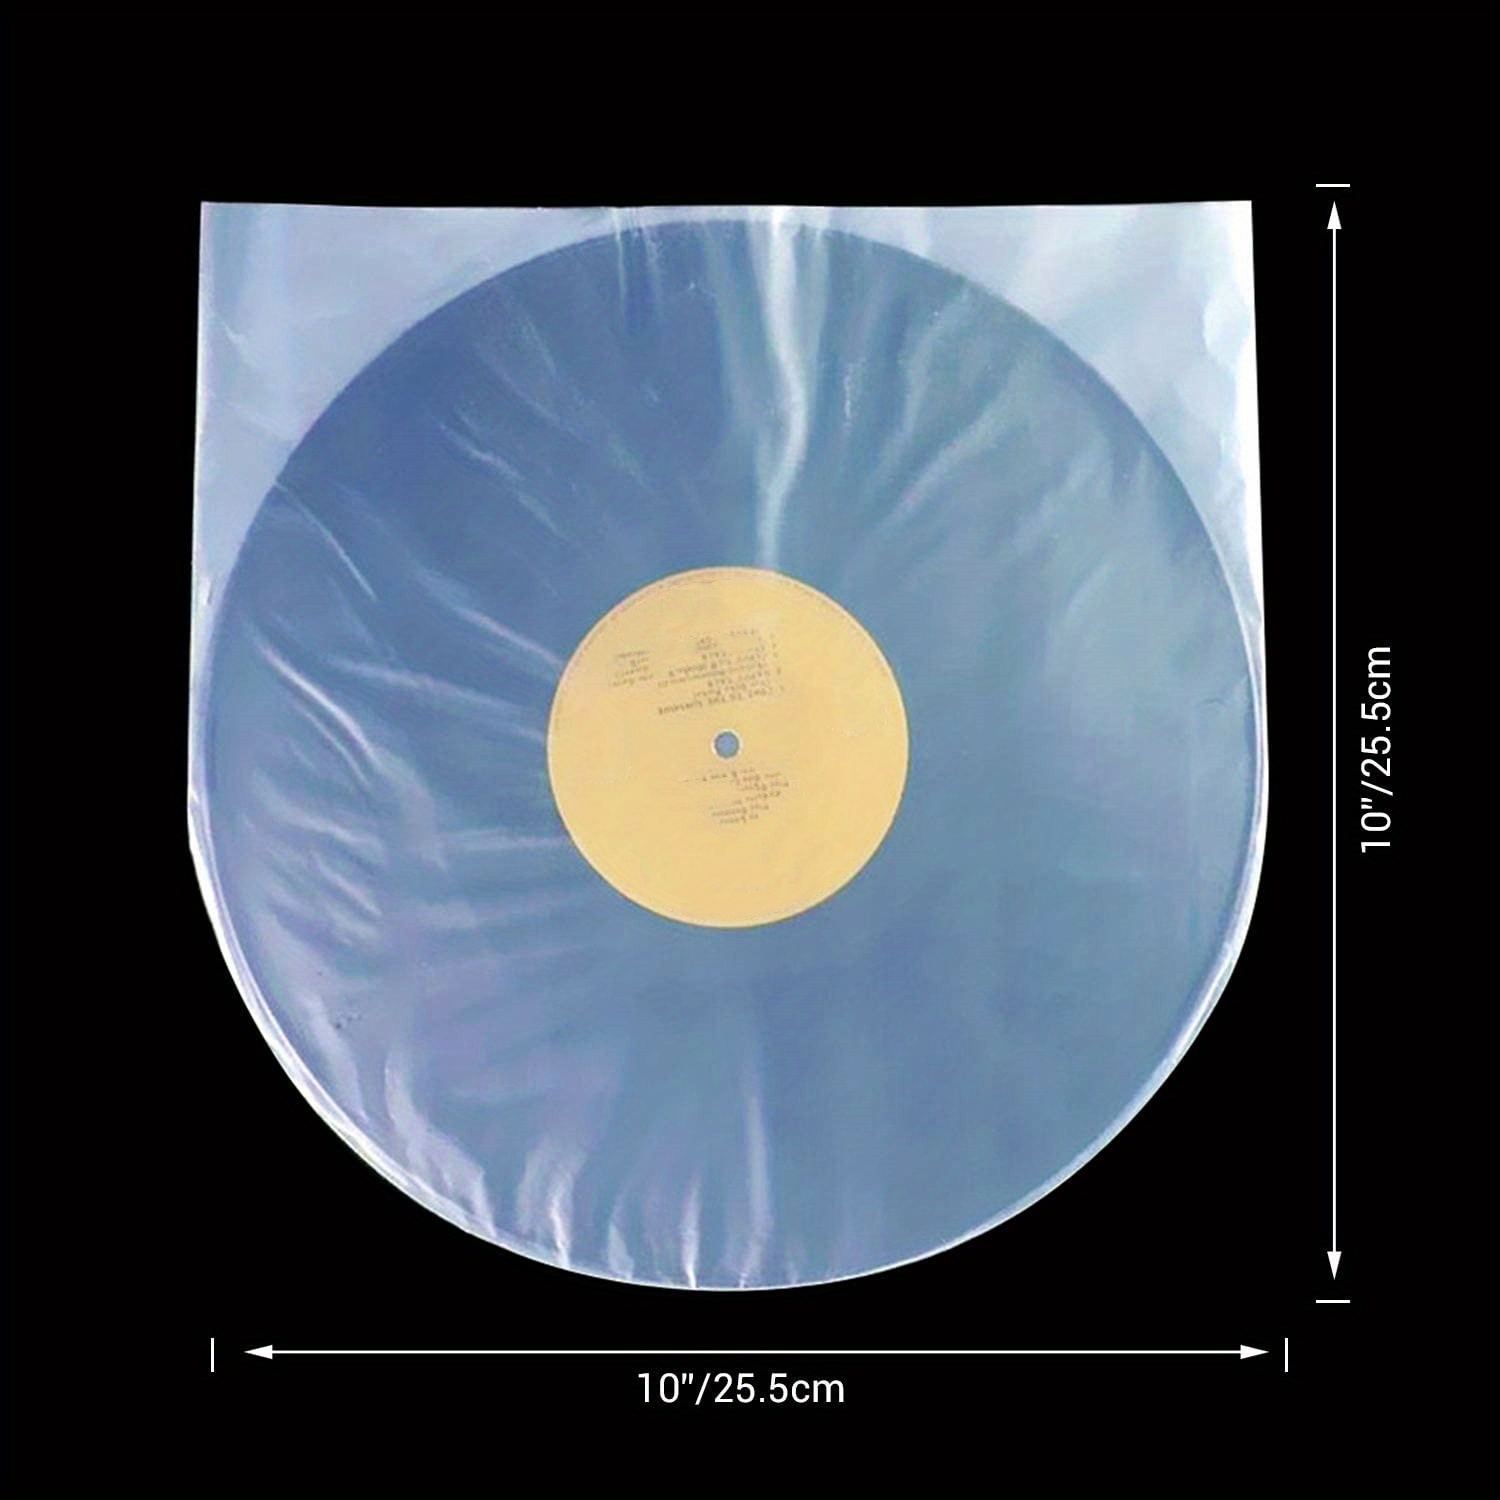 100x Pochettes Intérieures Disque Vinyle 33 Tours 12 LP